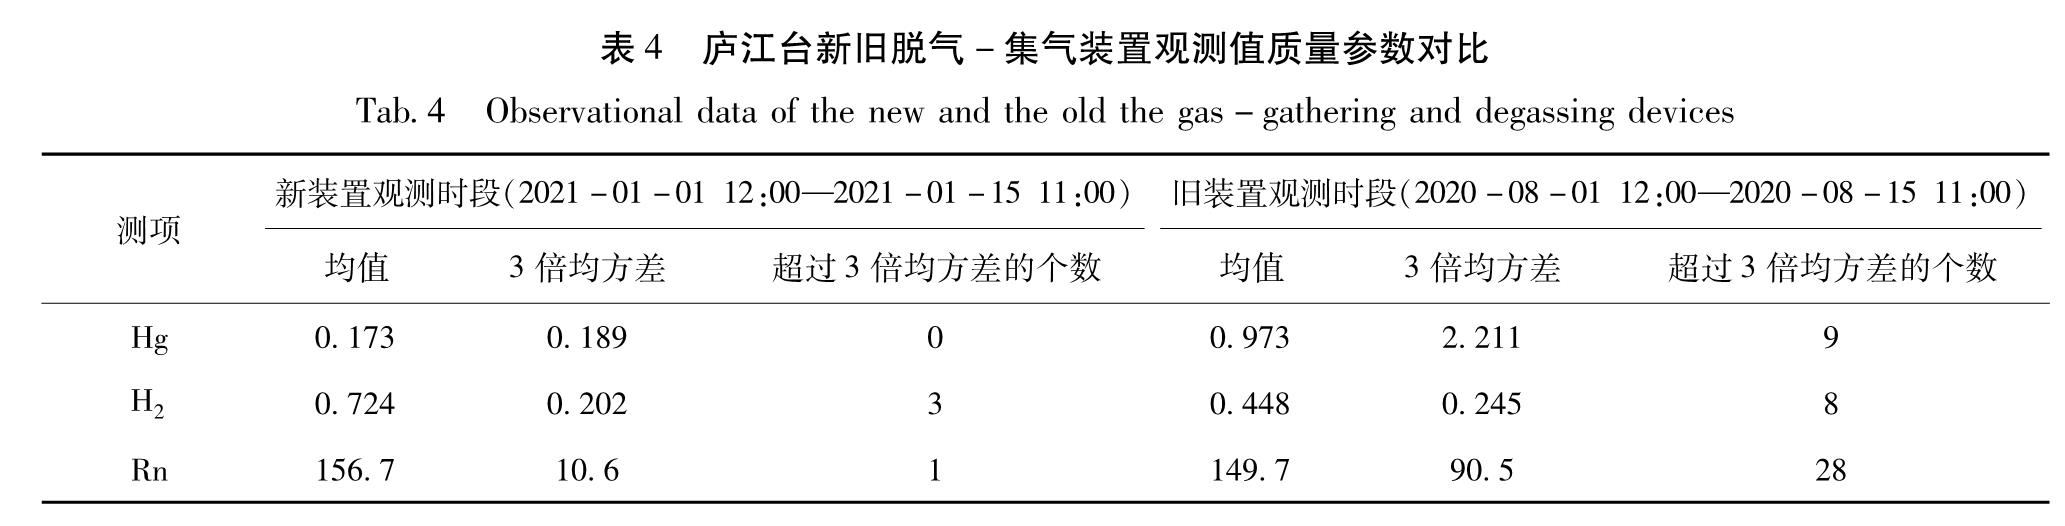 表4 庐江台新旧脱气-集气装置观测值质量参数对比<br/>Tab.4 Observational data of the new and the old the gas-gathering and degassing devices